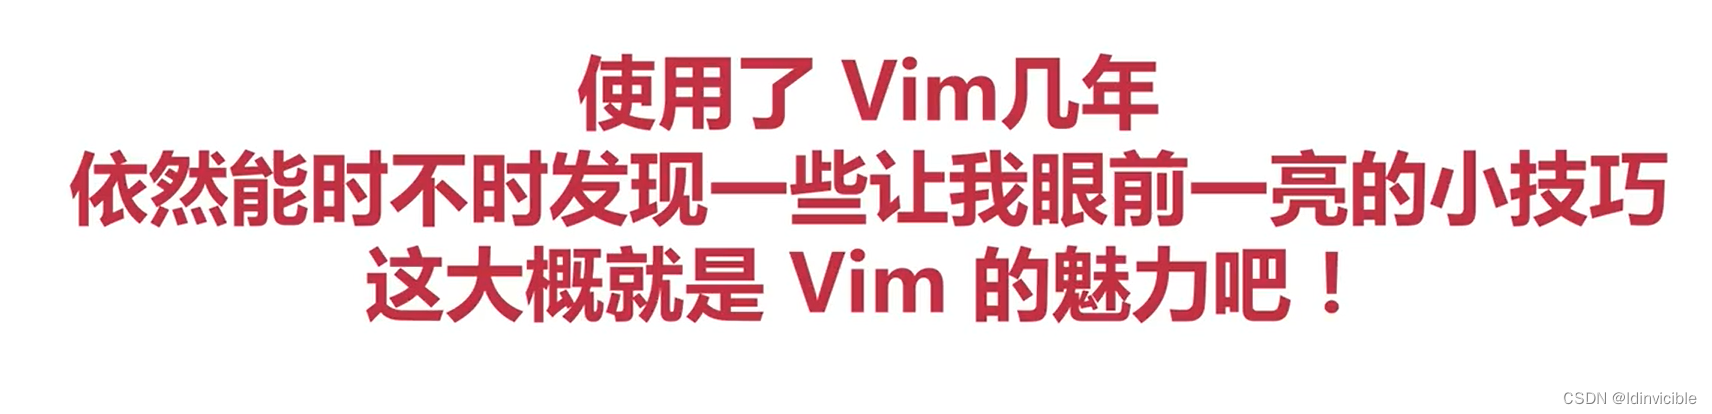 【VIM】VIM配合使用的工具_编辑器_20